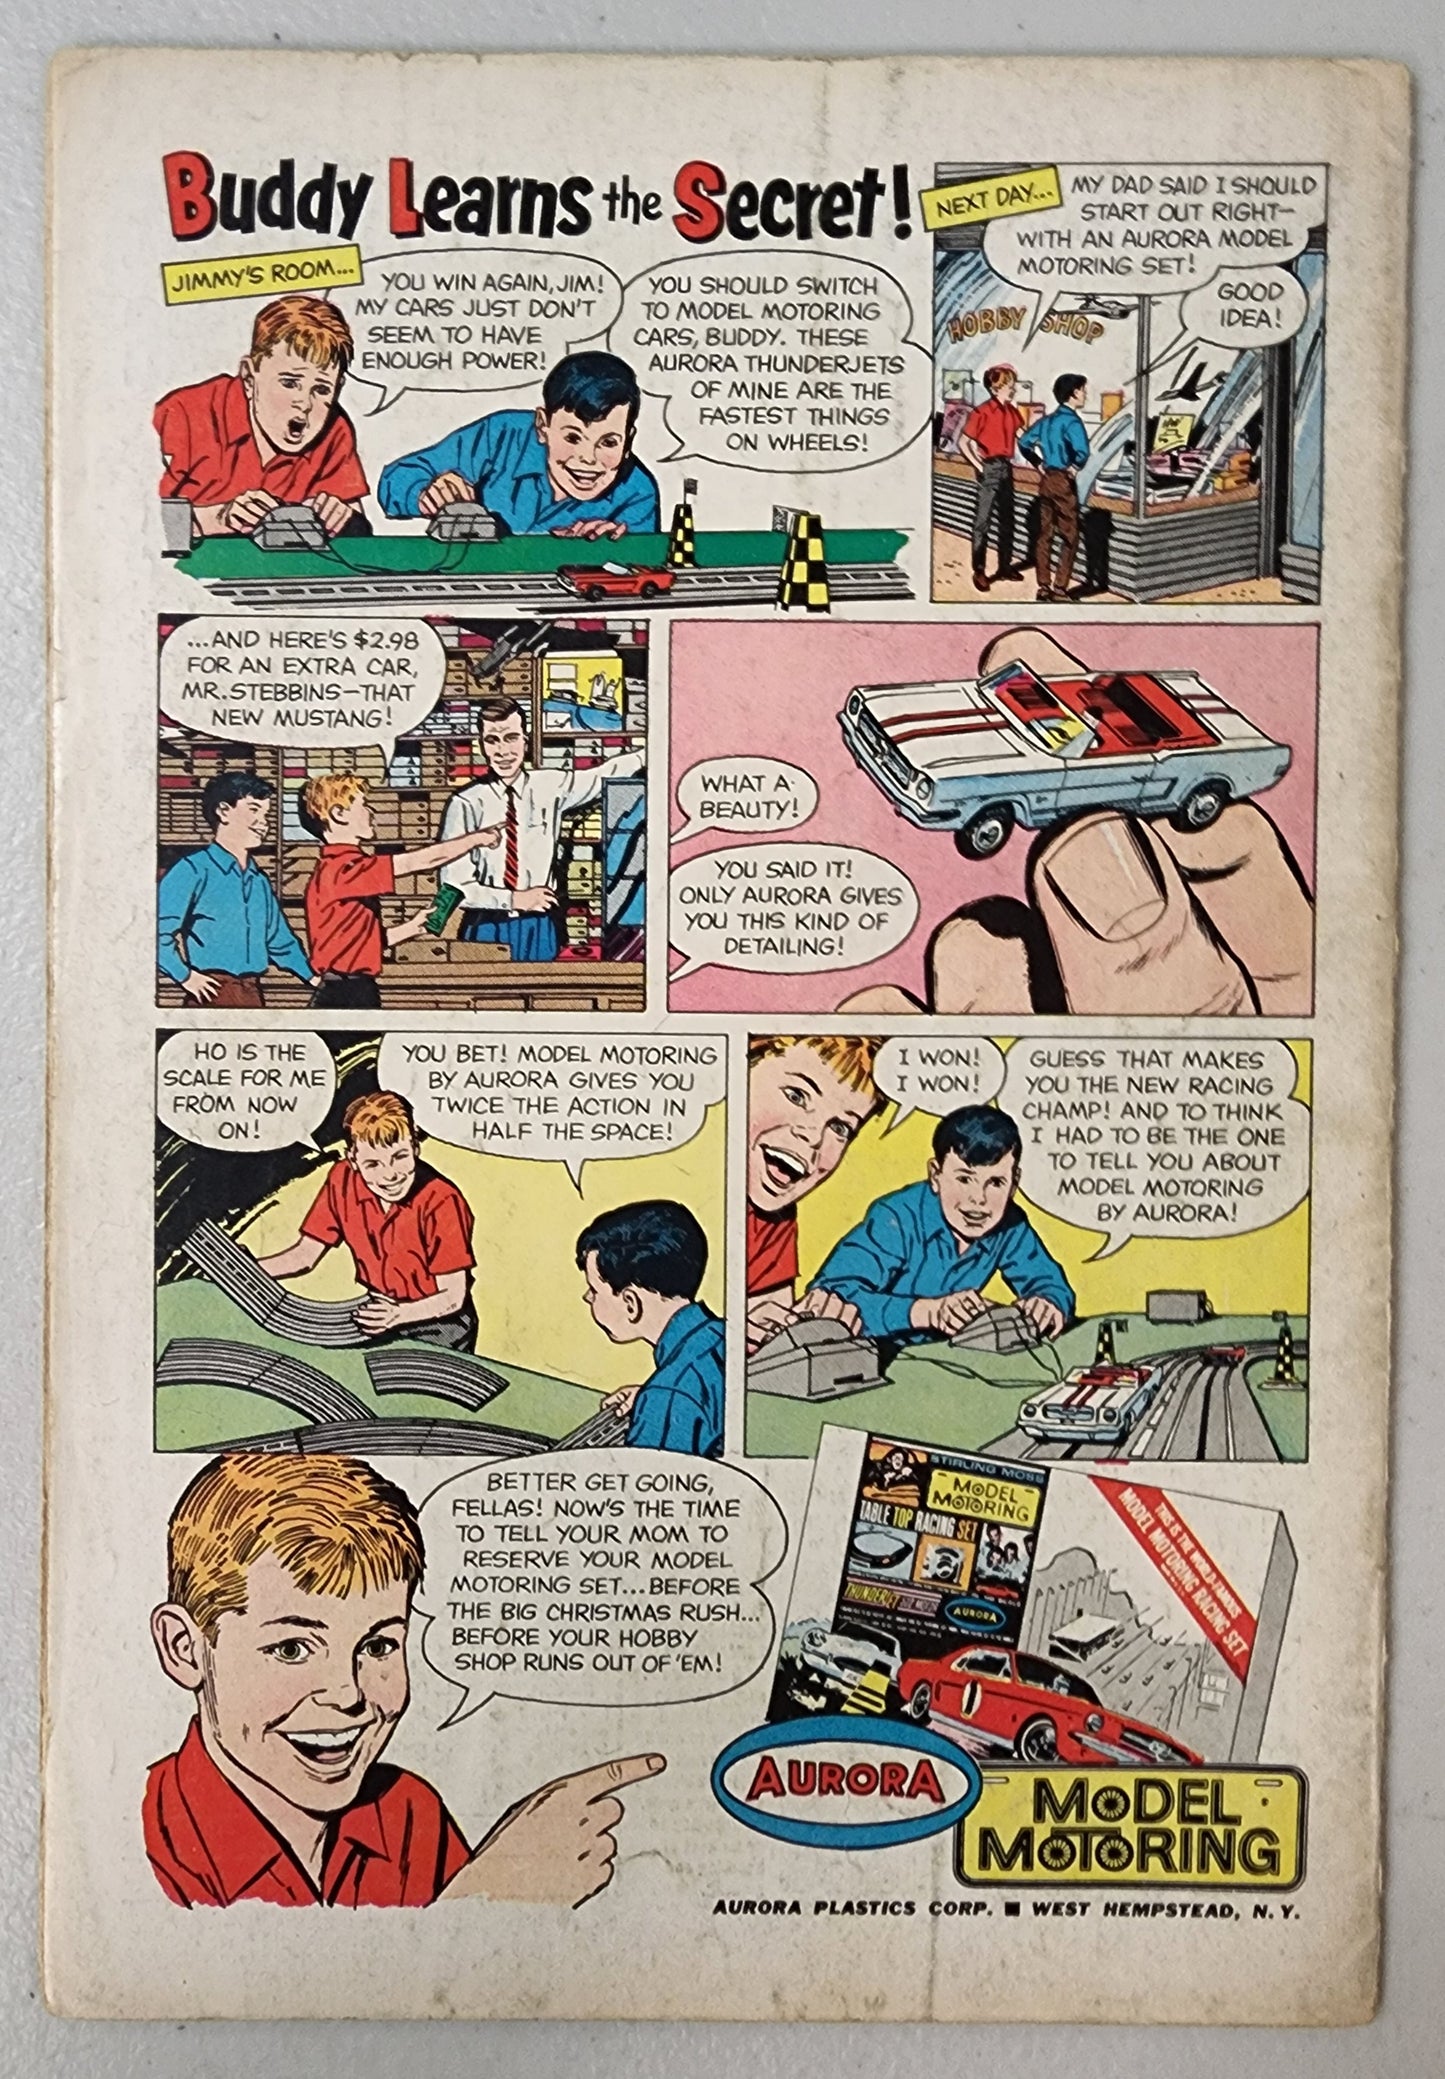 SUPERMAN #174 1965  DC COMICS   